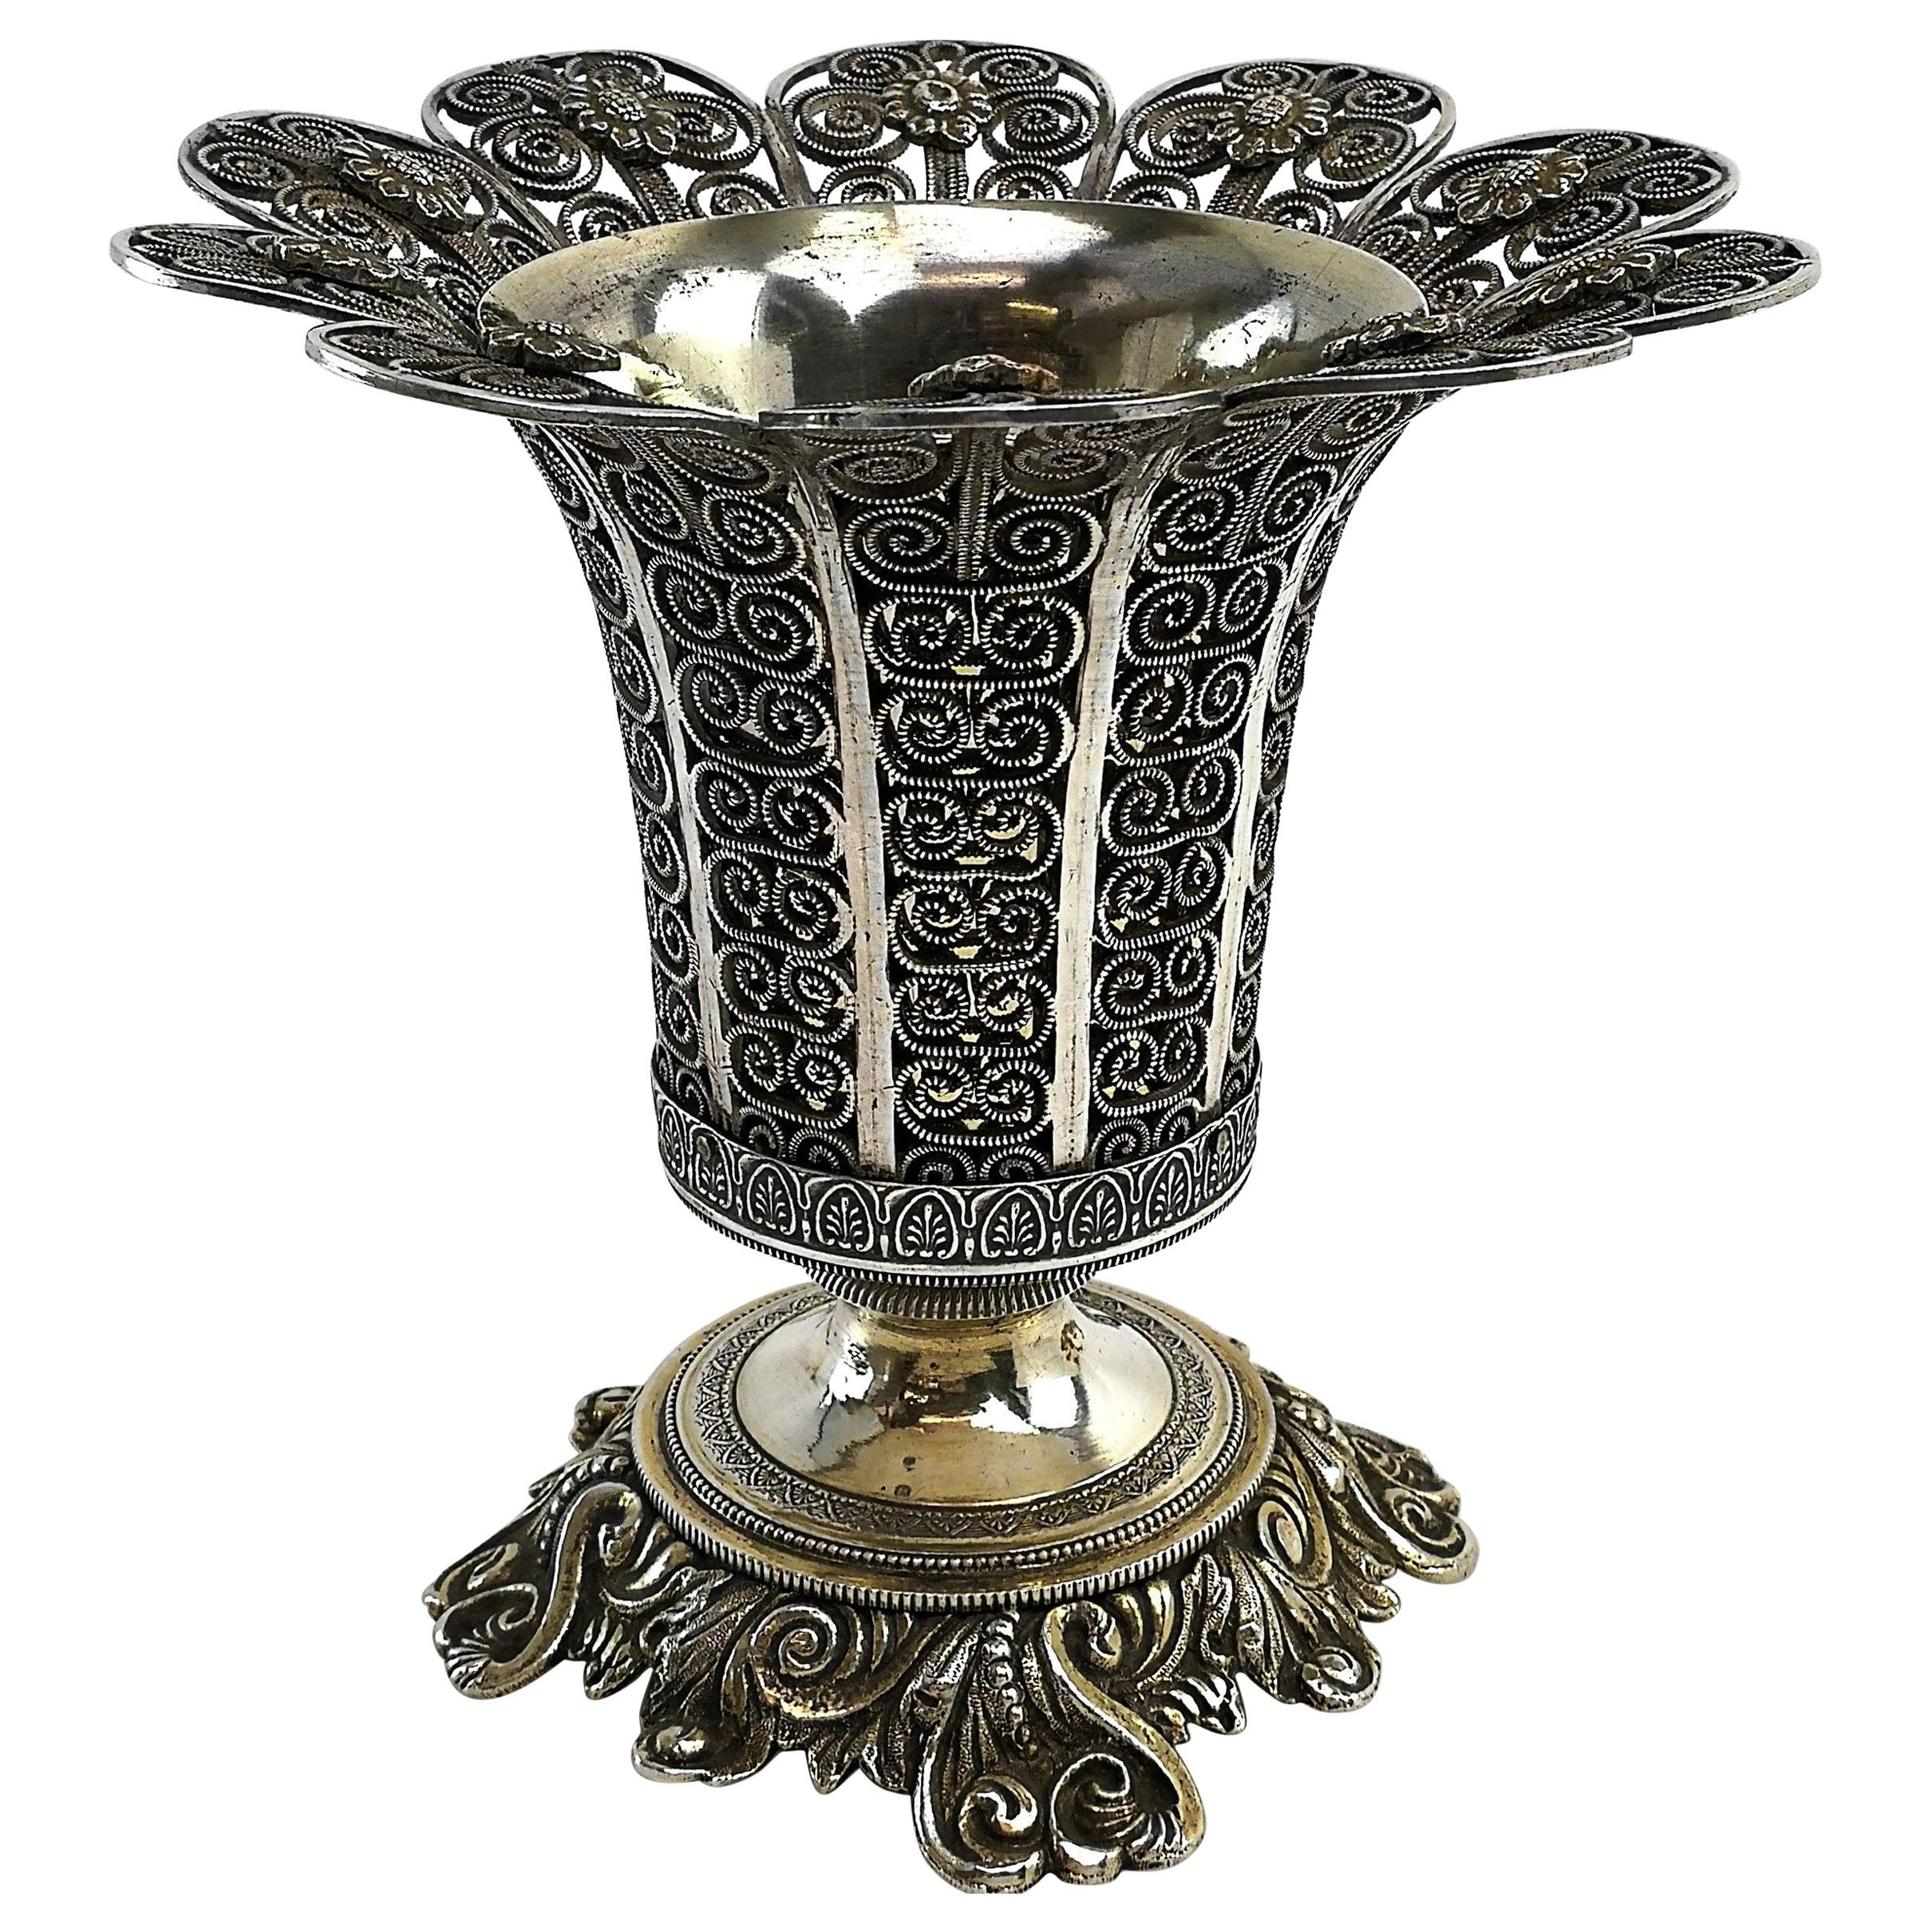 Antique Turkish Solid Silver Spoon Vase / Spoon Holder, circa 1890